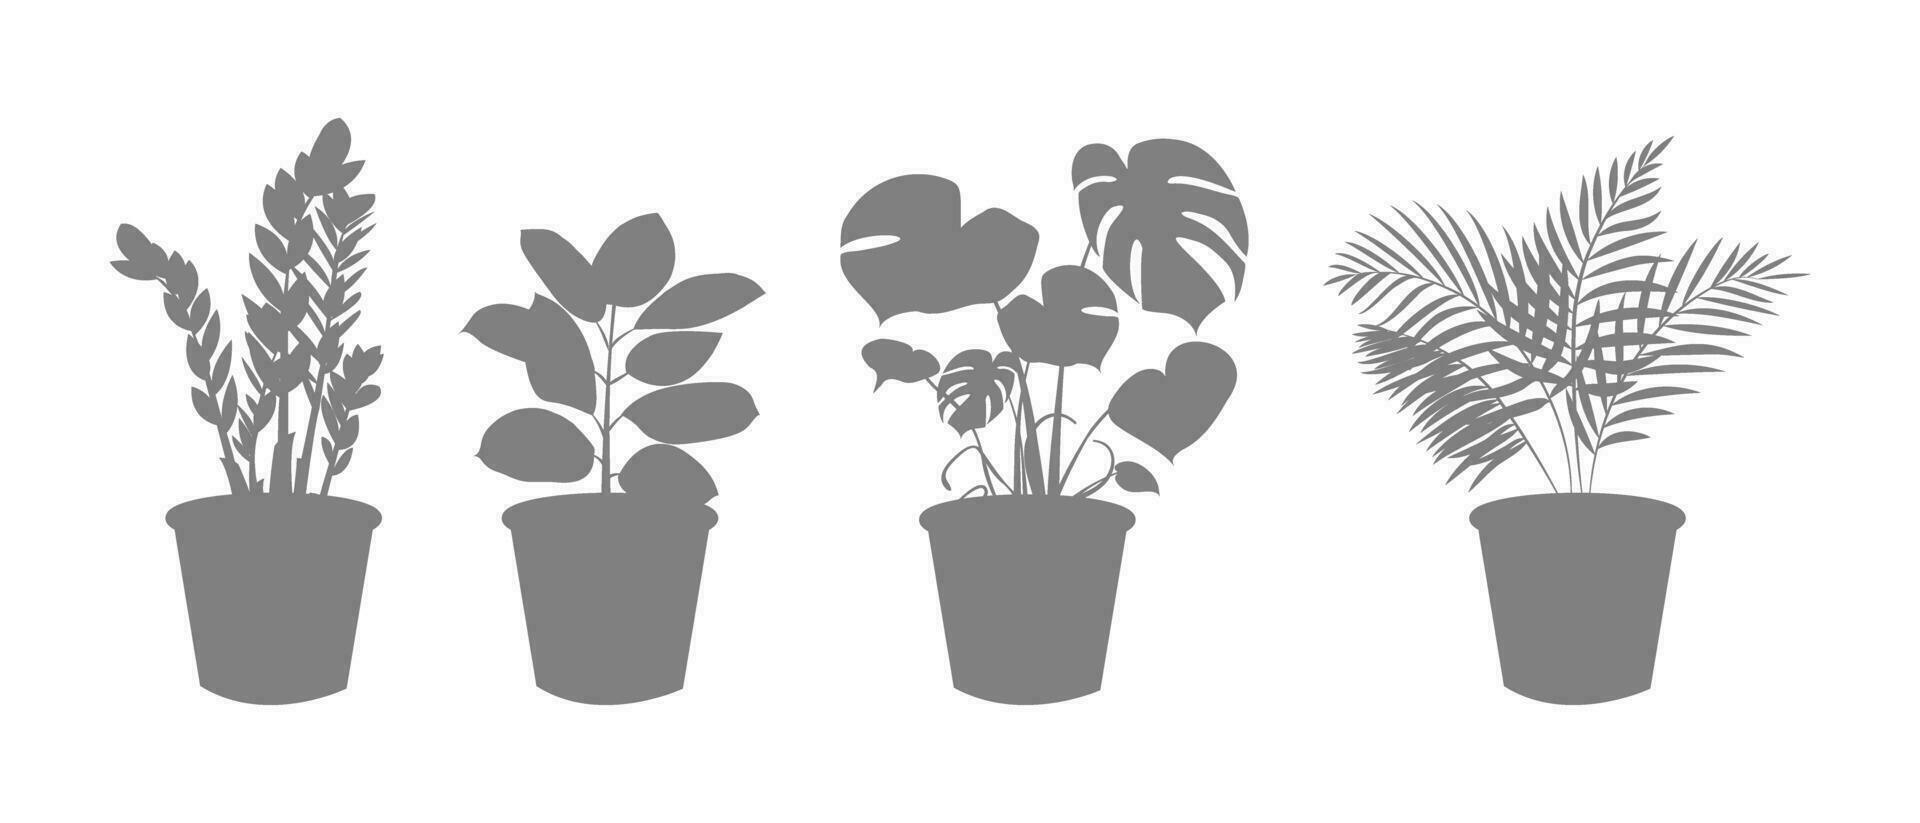 décoratif intérieur les plantes dans une pot silhouette. zamiokulkas dollar arbre, ficus et monstère, paume plante dans pot. Accueil fleurs Icônes pour jardinage. vecteur illustration.